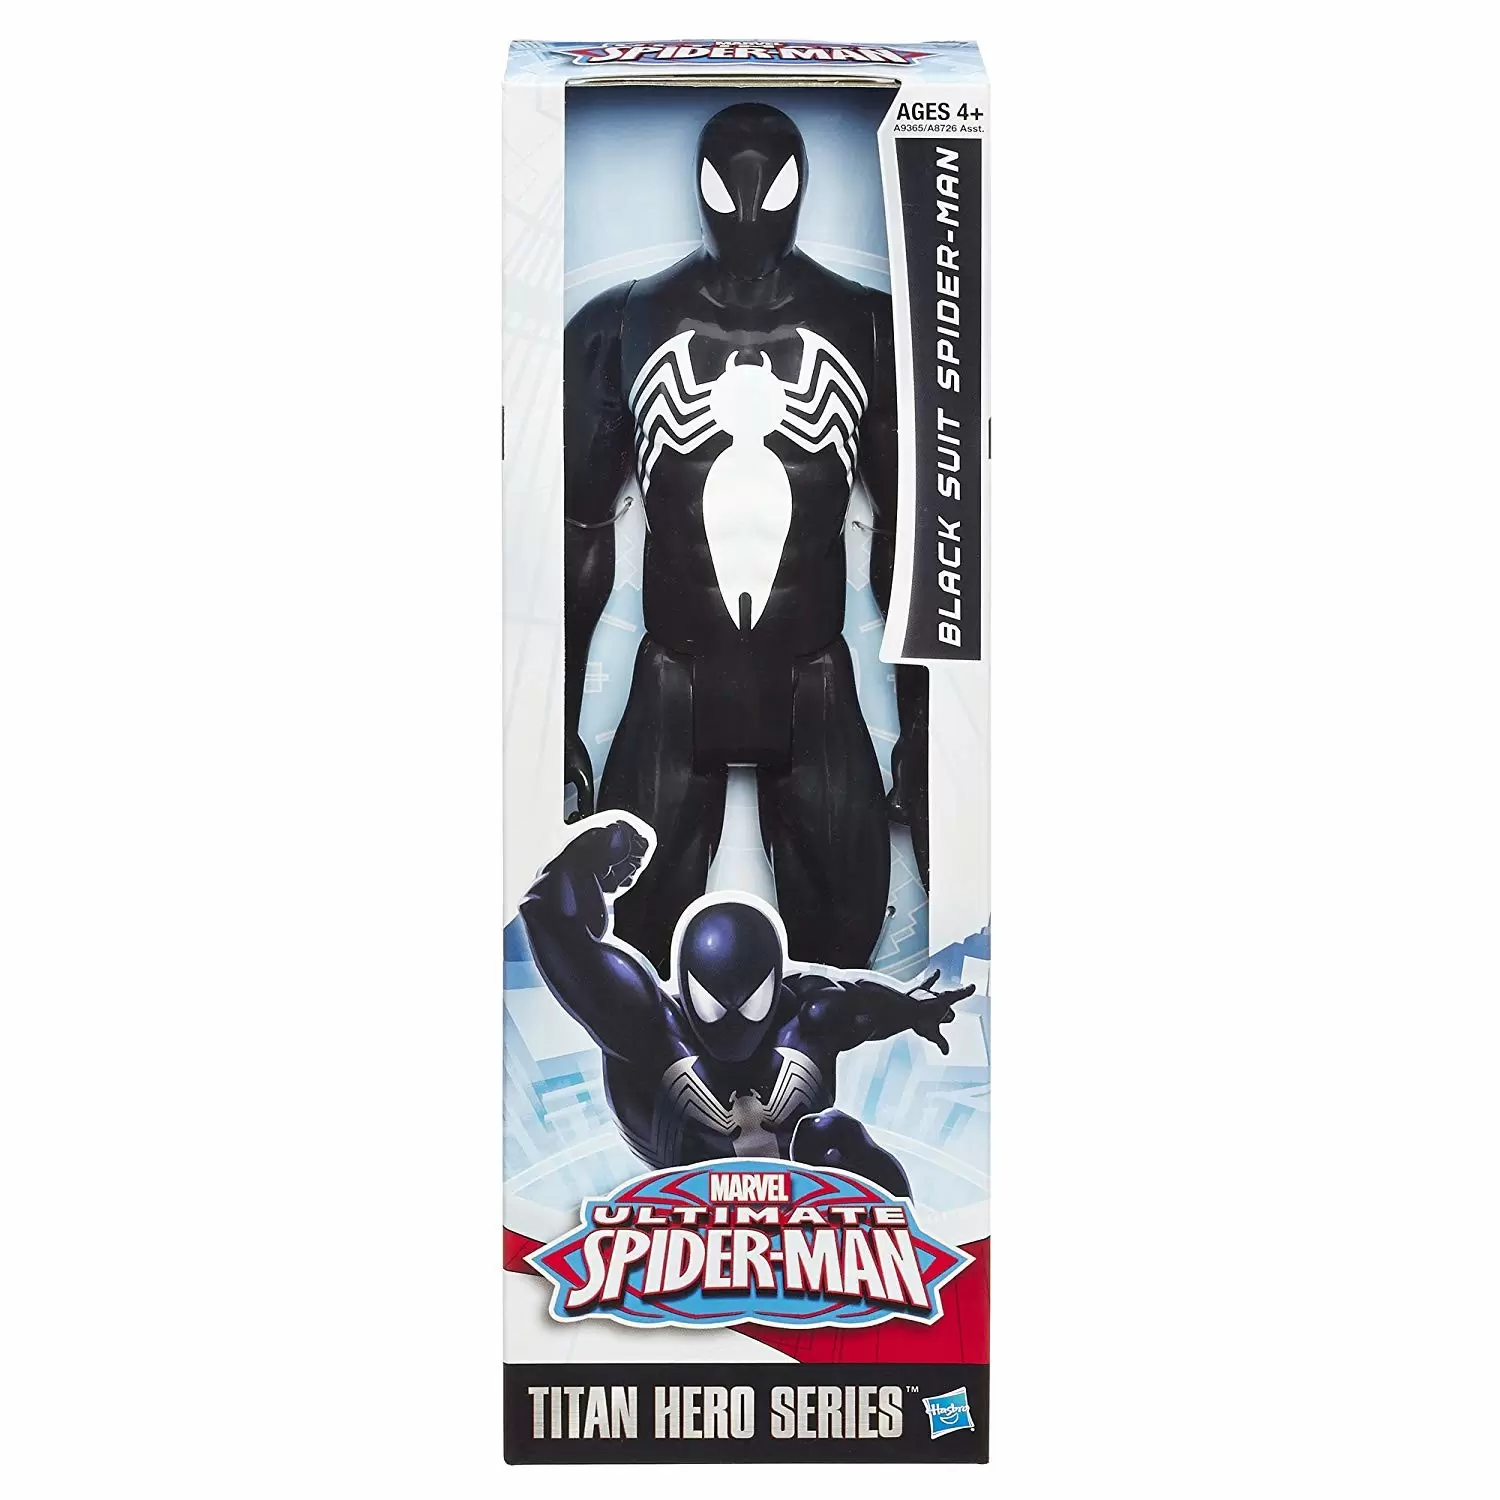 Titan Hero Series - Spider-Man - Black Suit Spider-Man - Ultimate Spider-Man